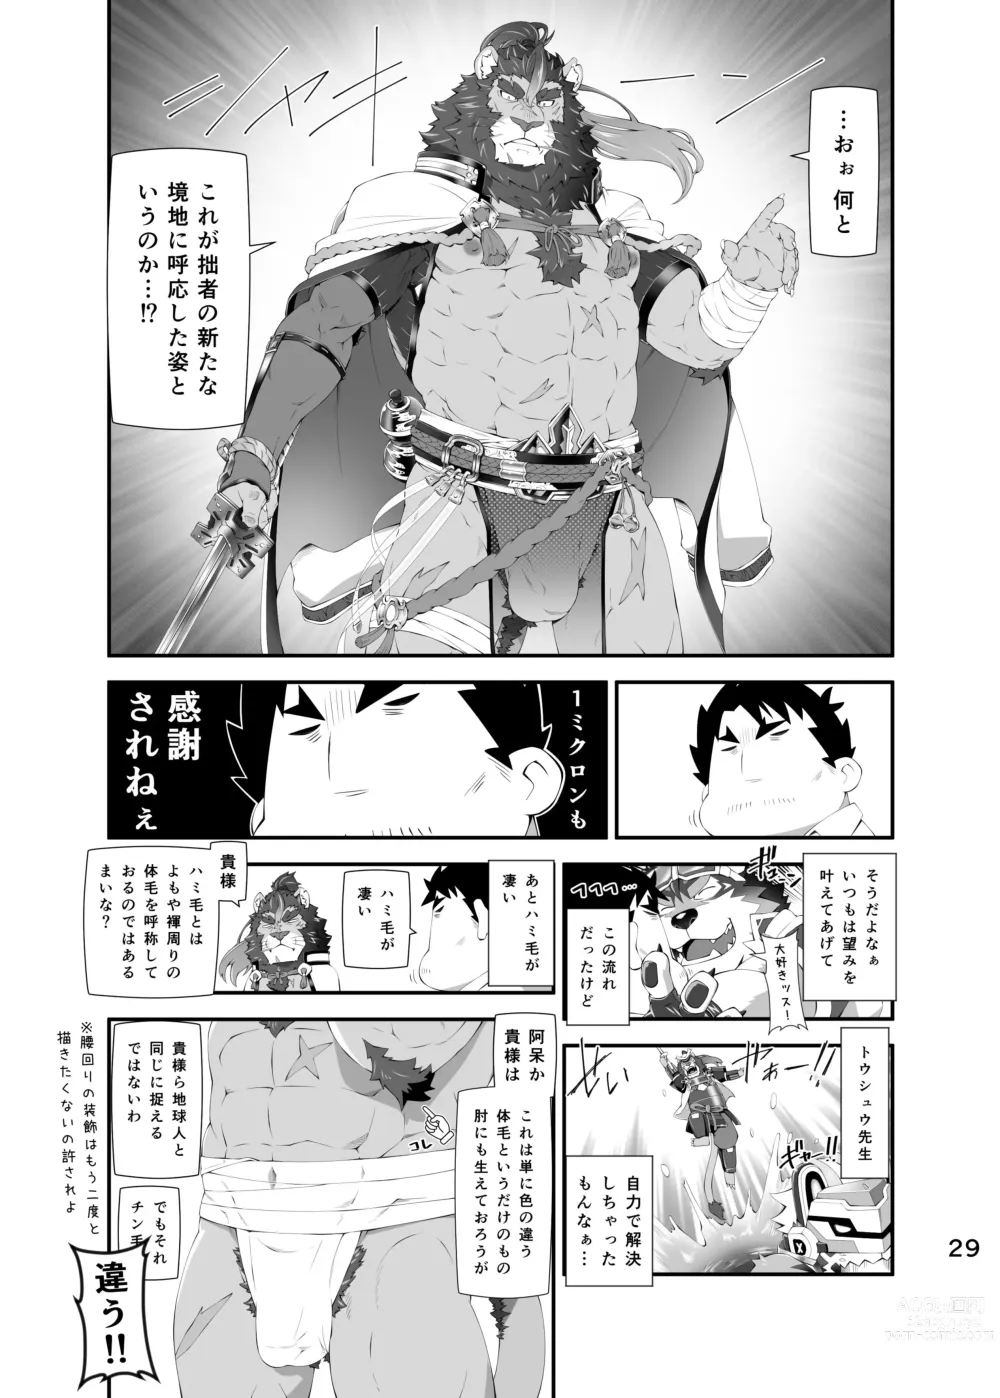 Page 28 of doujinshi LIVE AH ERO